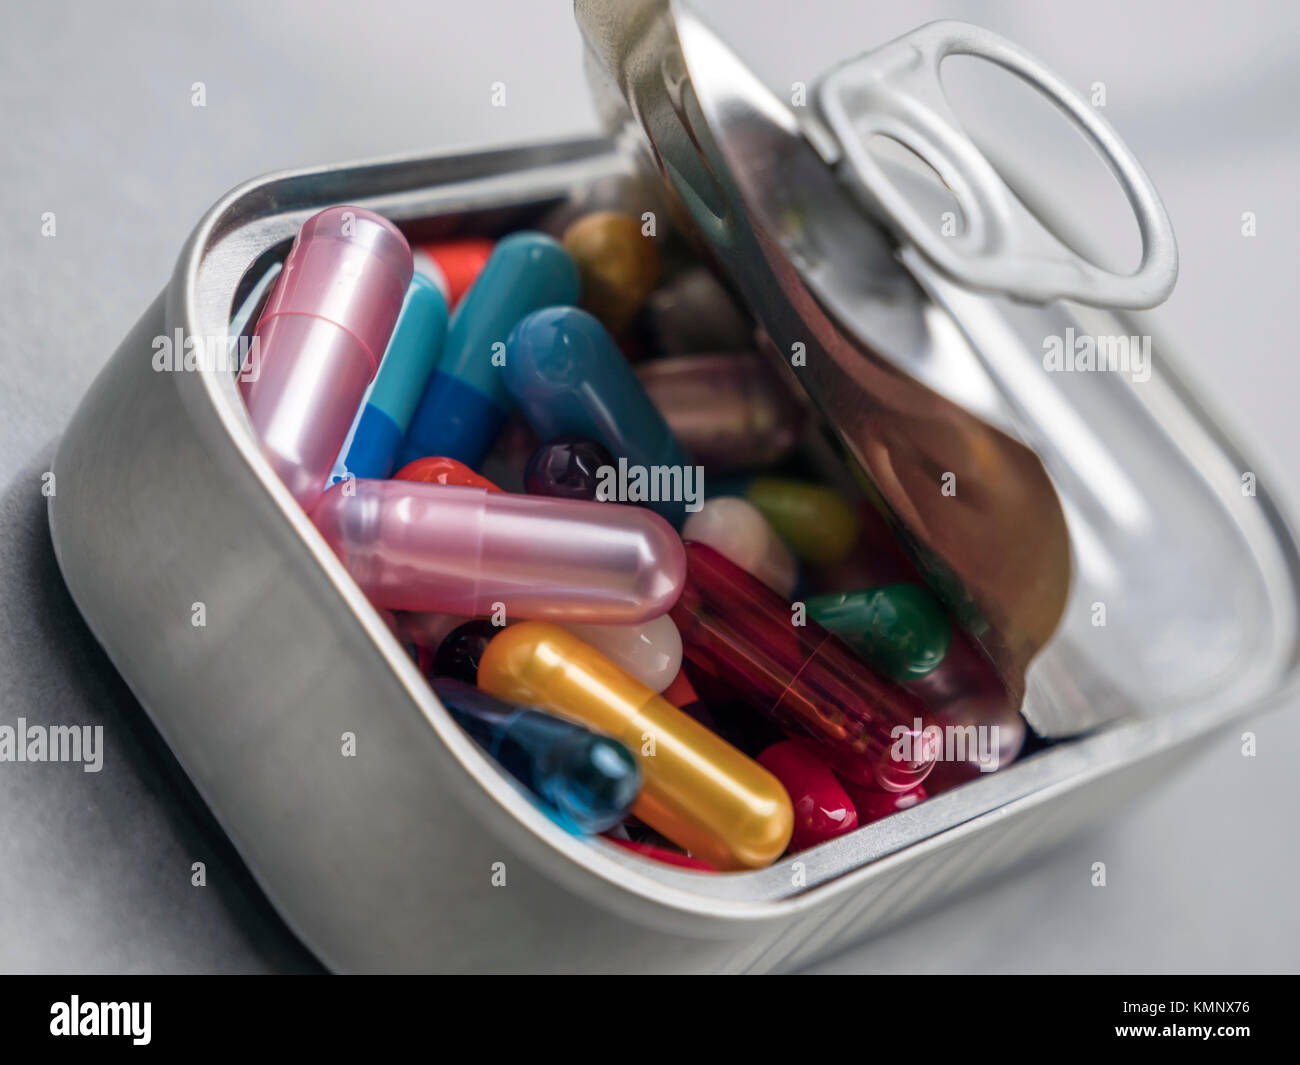 Estaño metálico contiene pastillas de color blanco y rojo, imagen conceptual Foto de stock